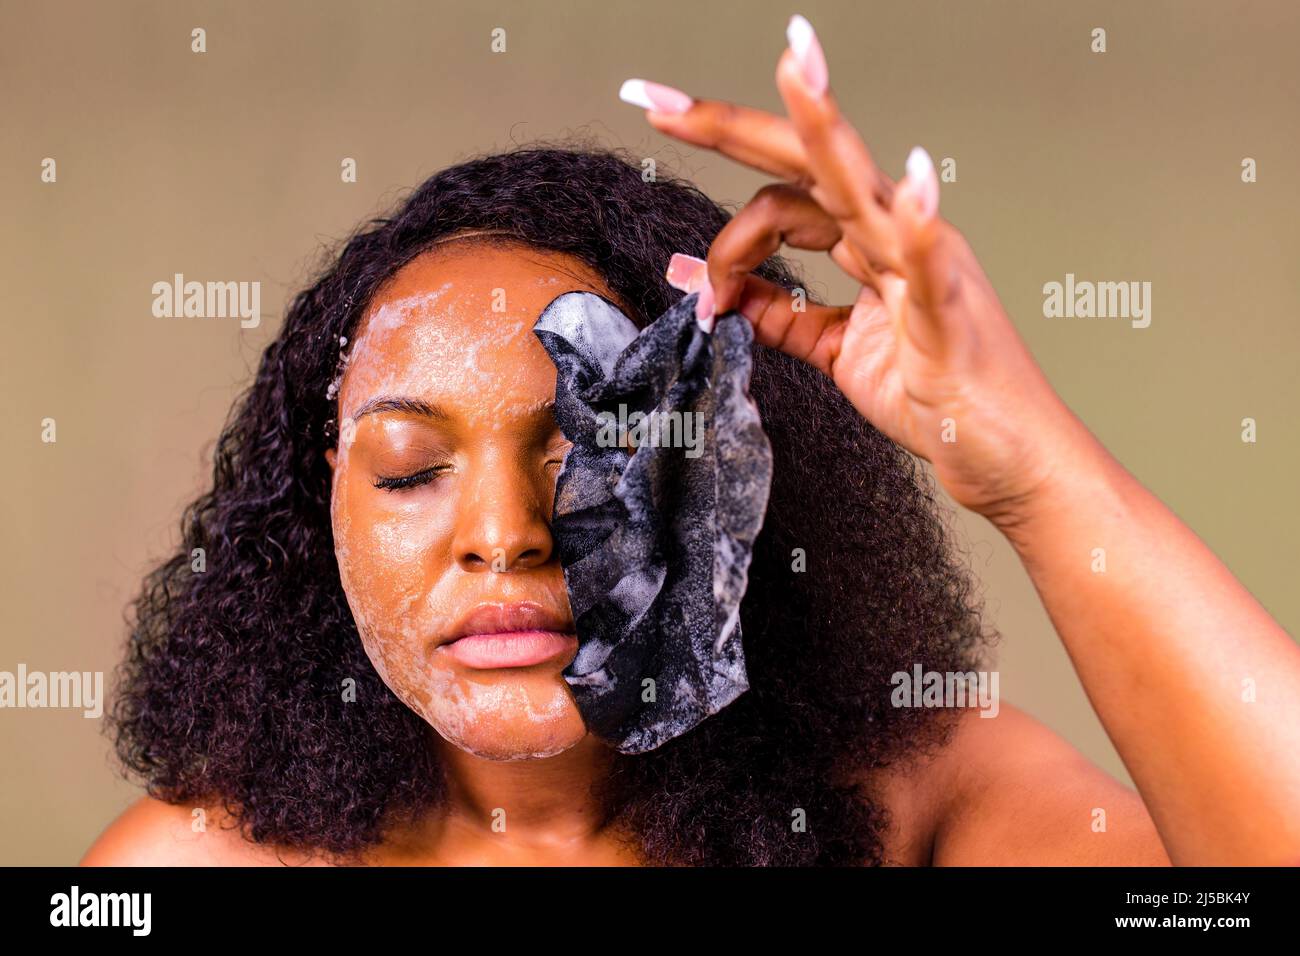 Junge Frau mit Blasenblatt Maske auf ihrem Gesicht auf braunem Hintergrund Stockfoto